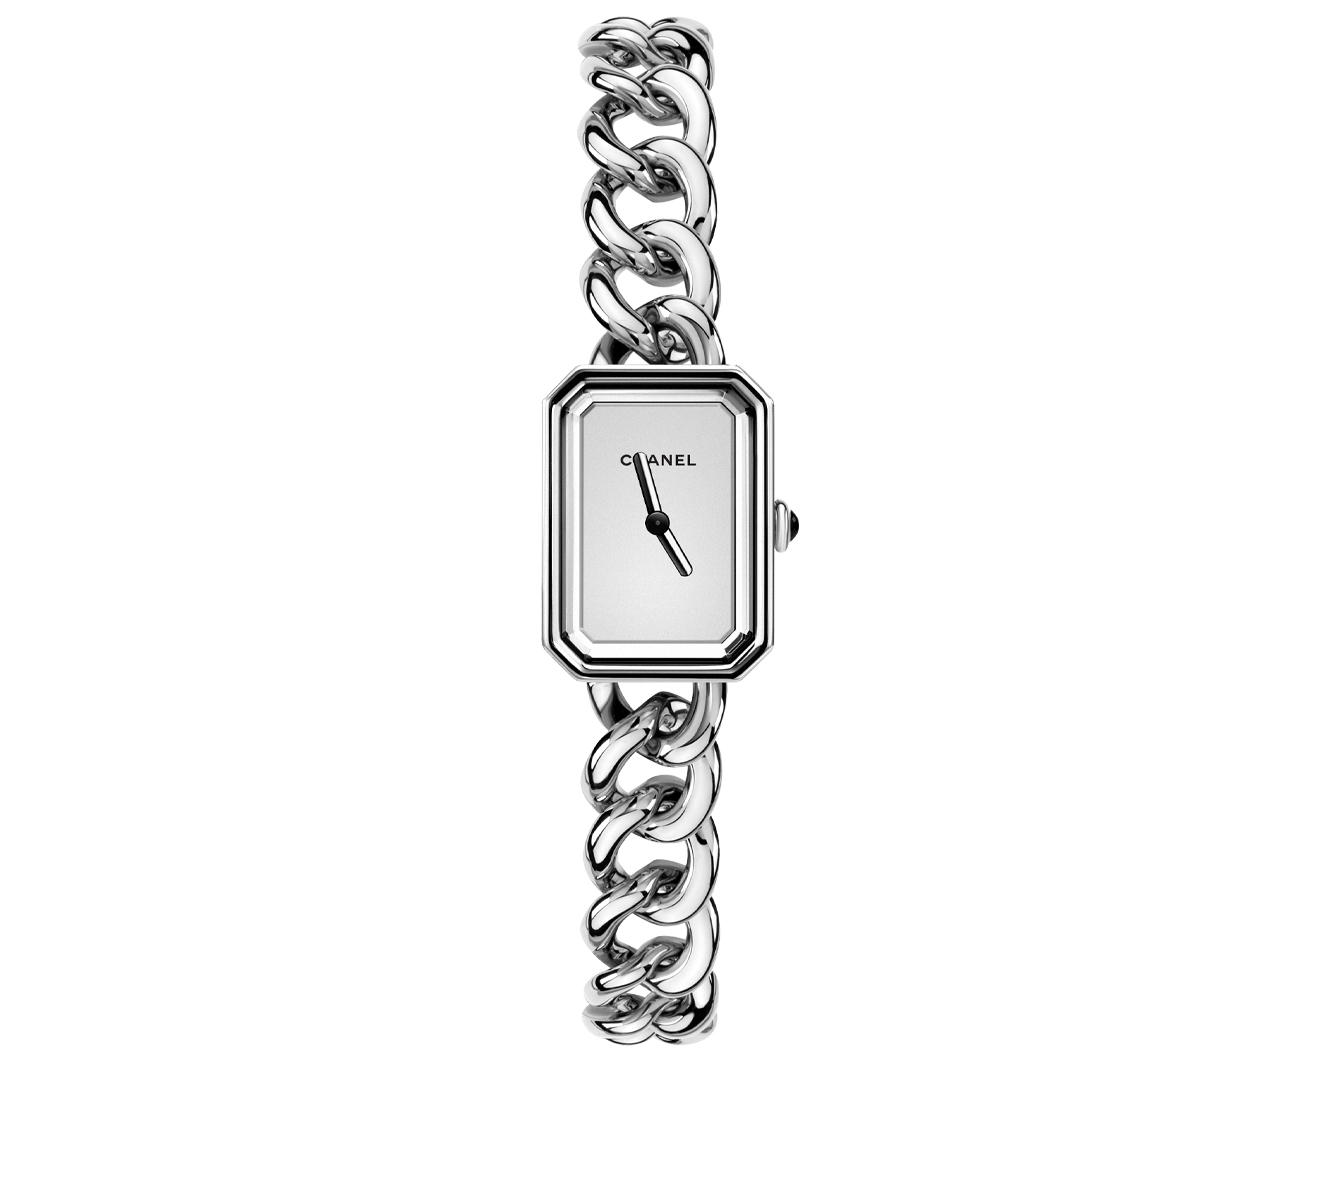 Часы Chanel Premiere H3249 - фото 1 – Mercury